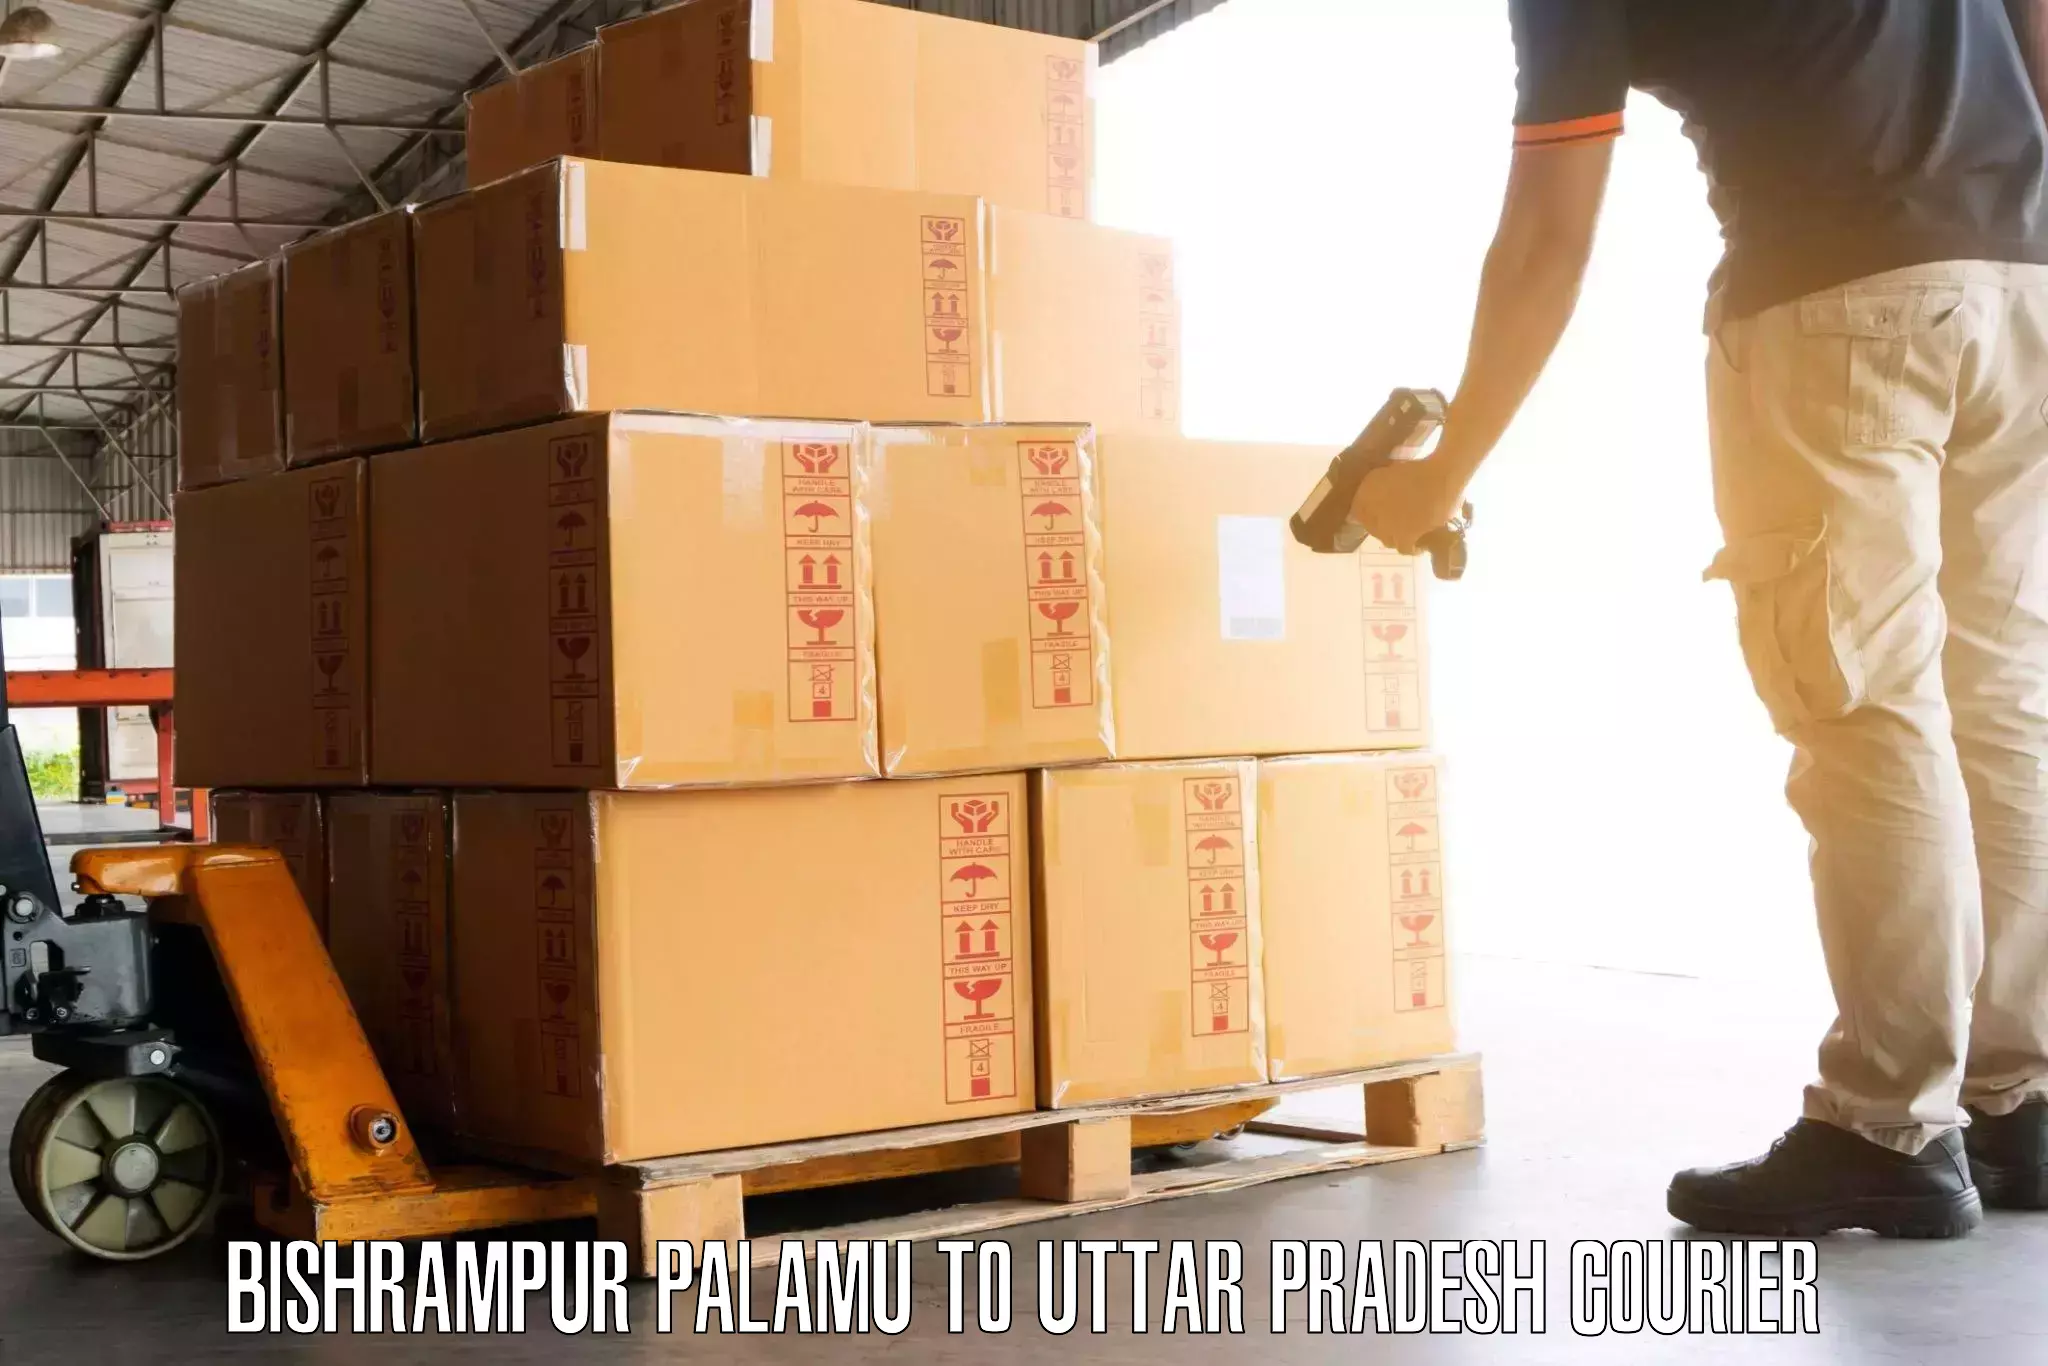 Luggage transport consulting Bishrampur Palamu to Uttar Pradesh